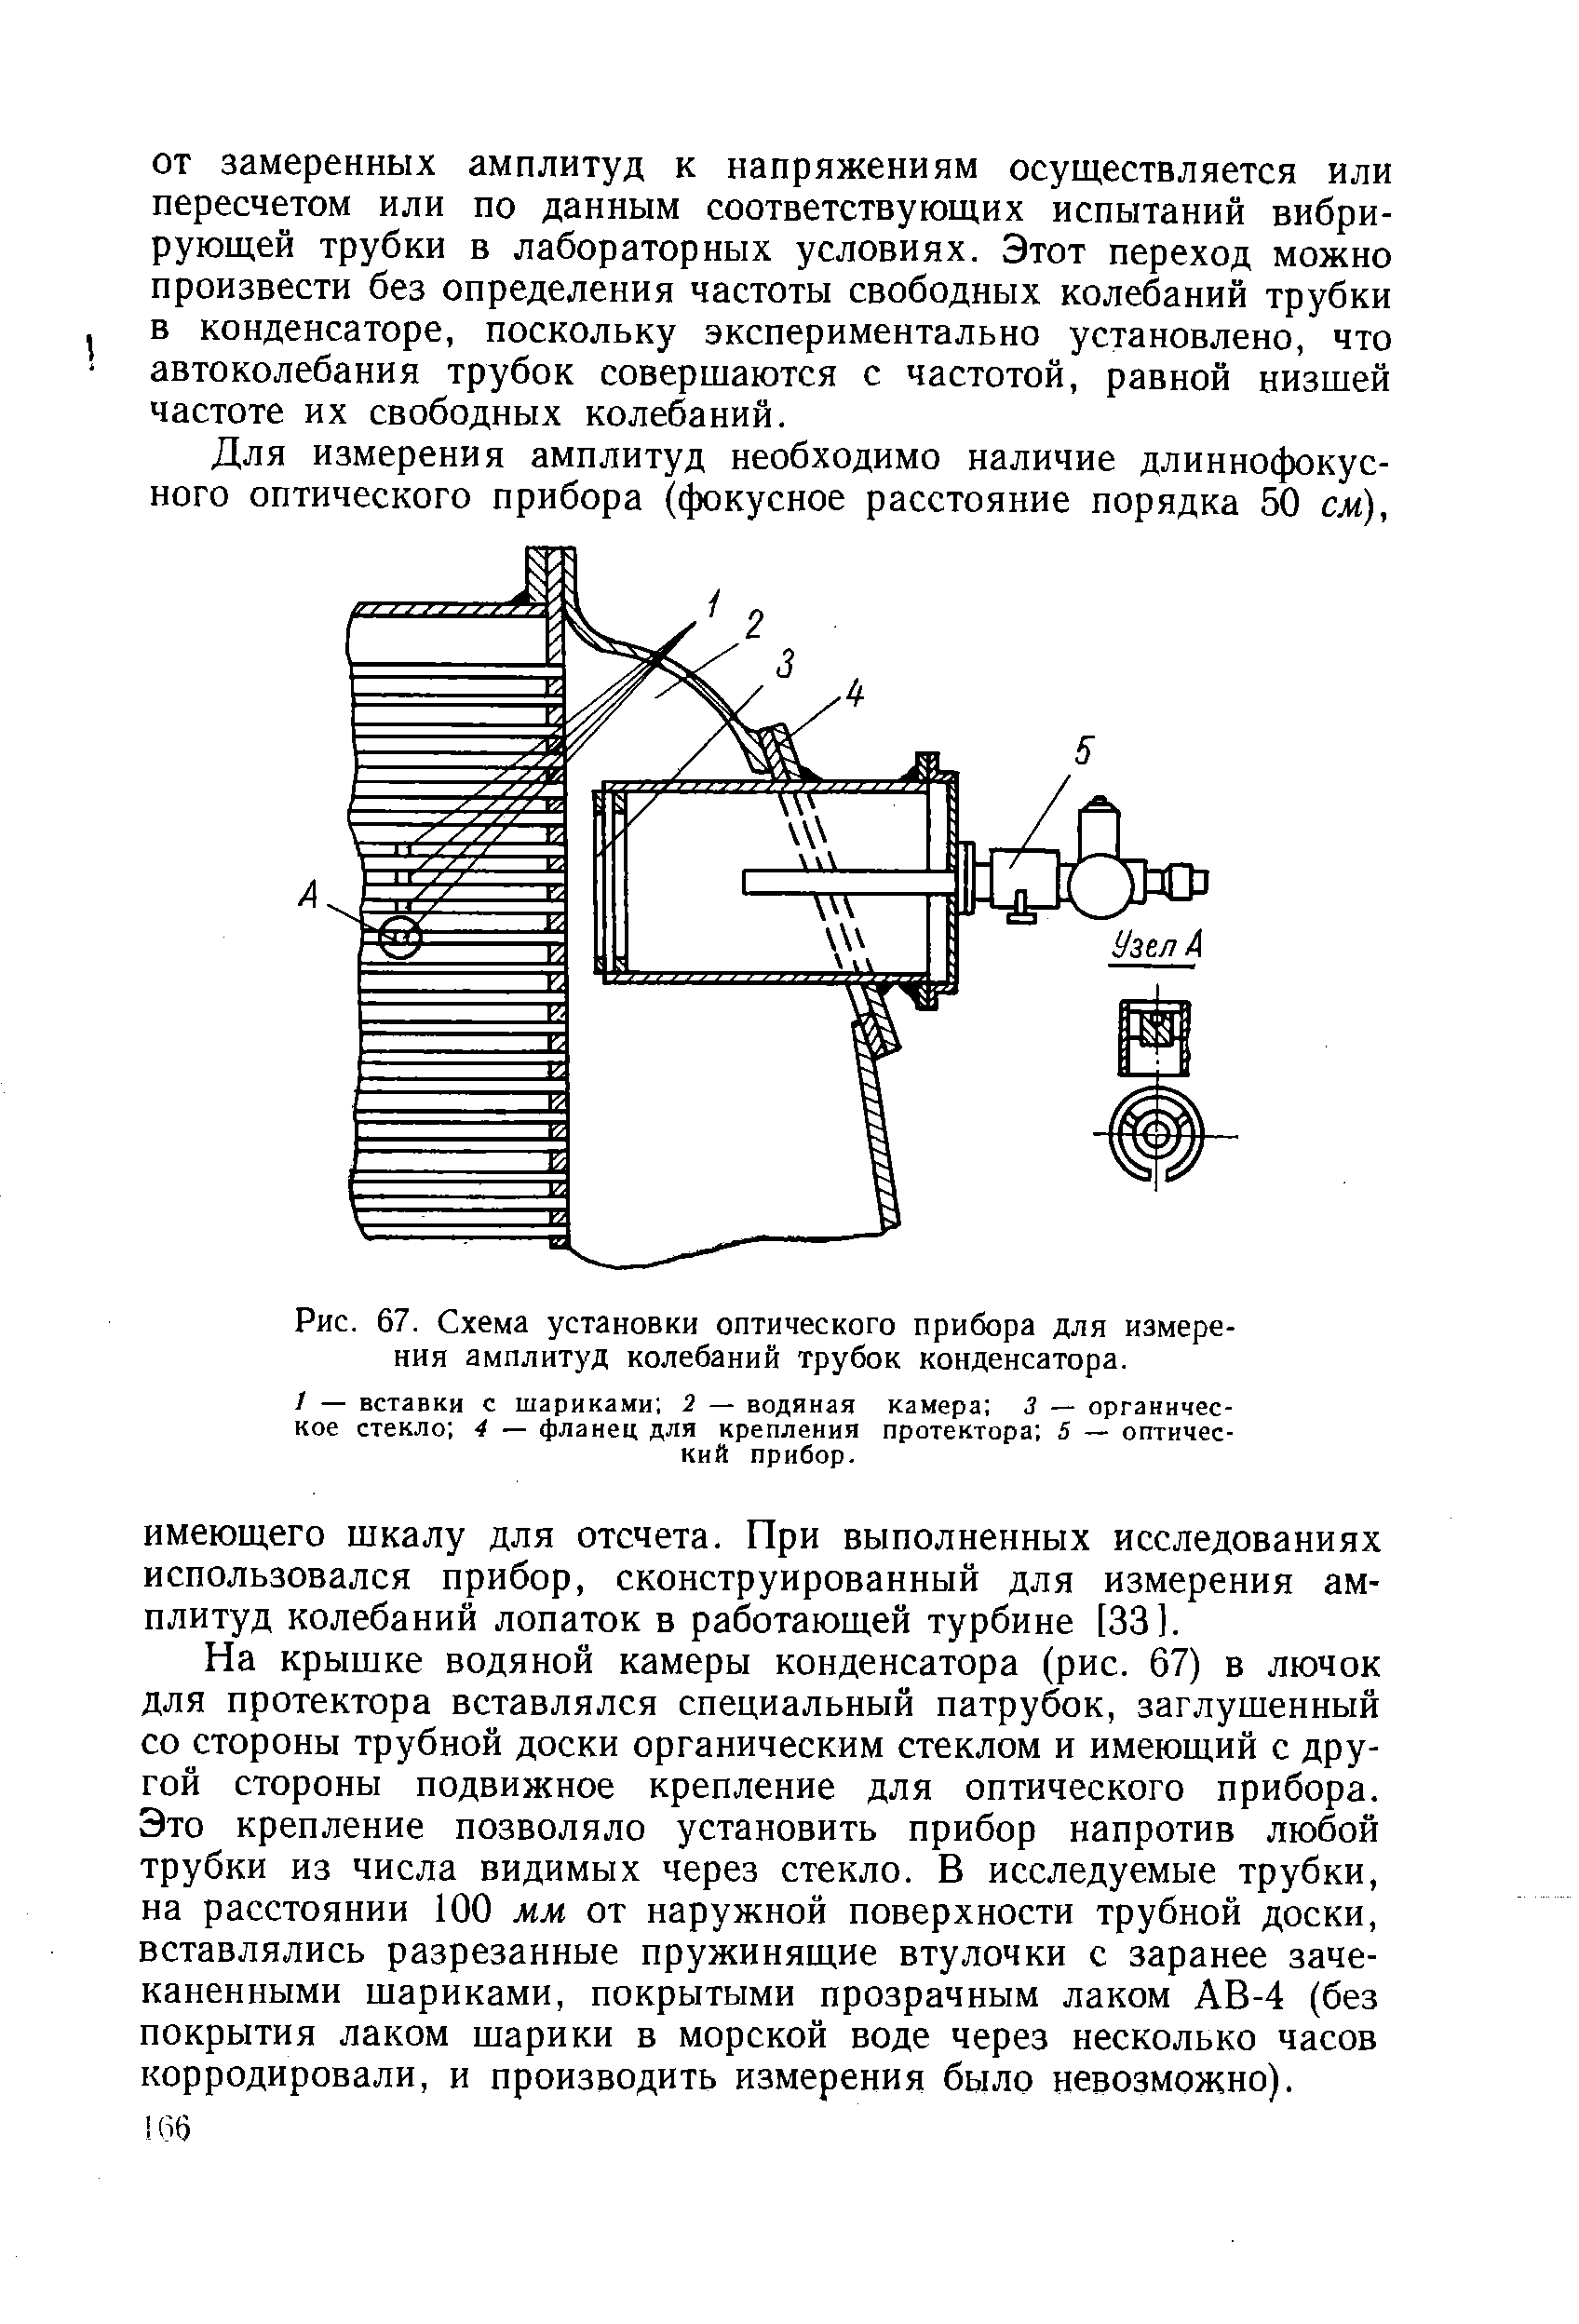 Рис. 67. Схема установки <a href="/info/3186">оптического прибора</a> для измерения амплитуд колебаний трубок конденсатора.
